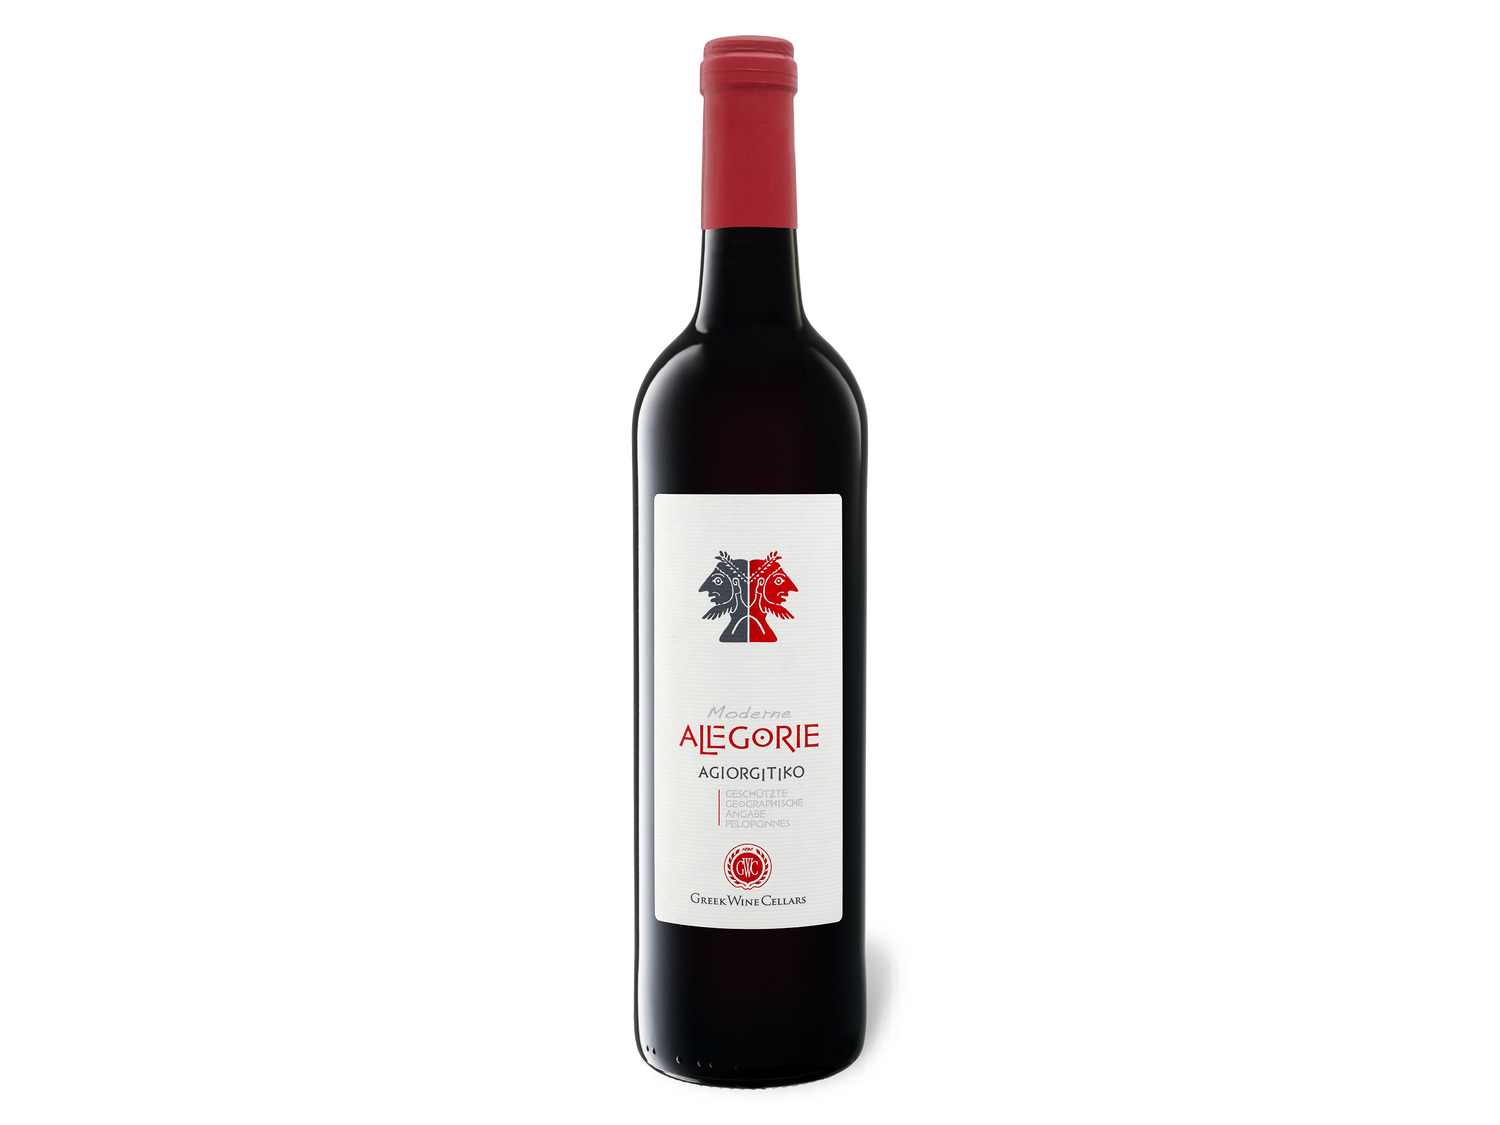 Agiorgitiko PGI Alegorie Moderne Wine tr… Cellars Greek